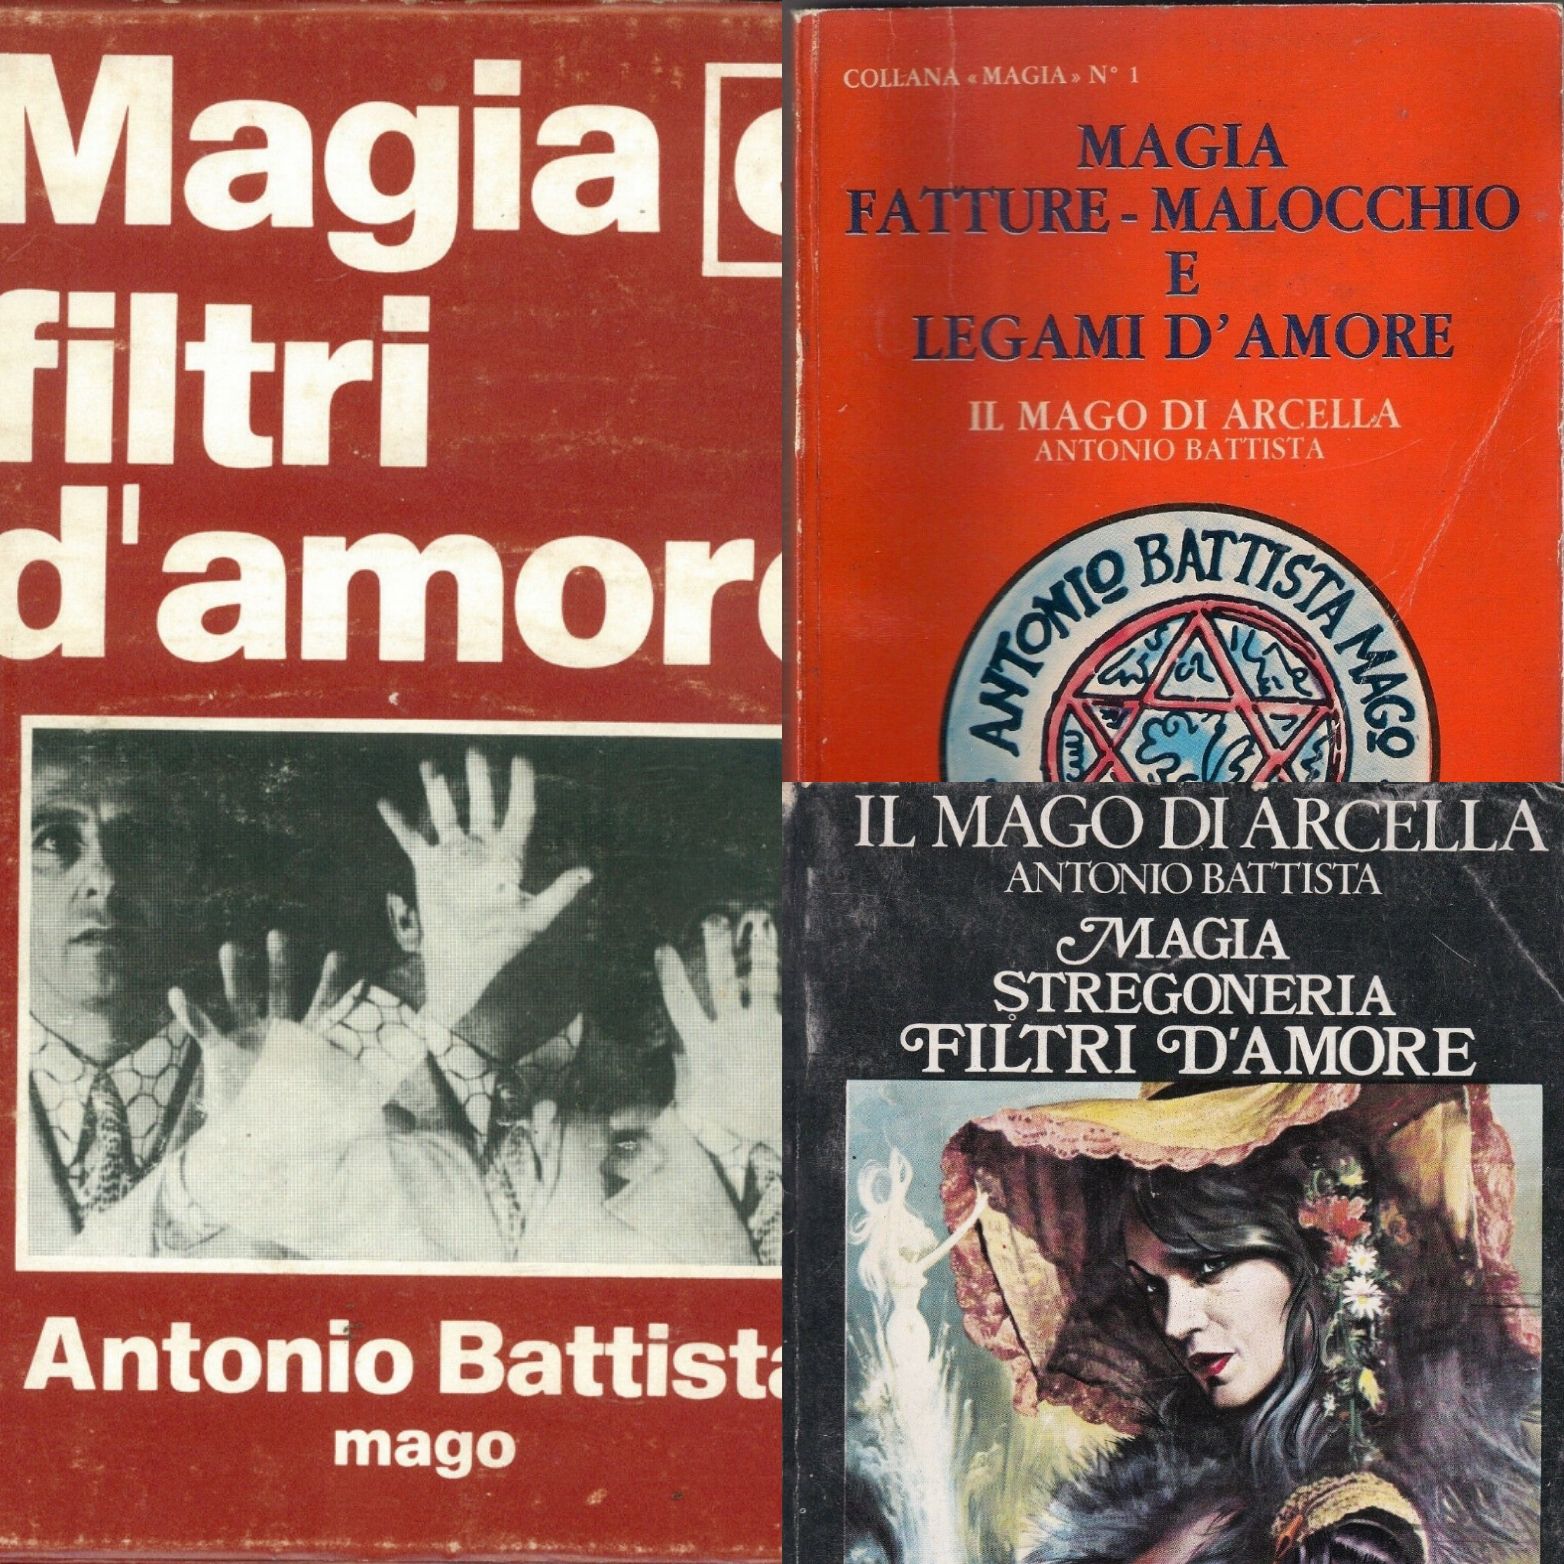 Vi ricordate il Mago di Arcella (Antonio Battista)? I suoi libri anni ’70 sono da collezione!